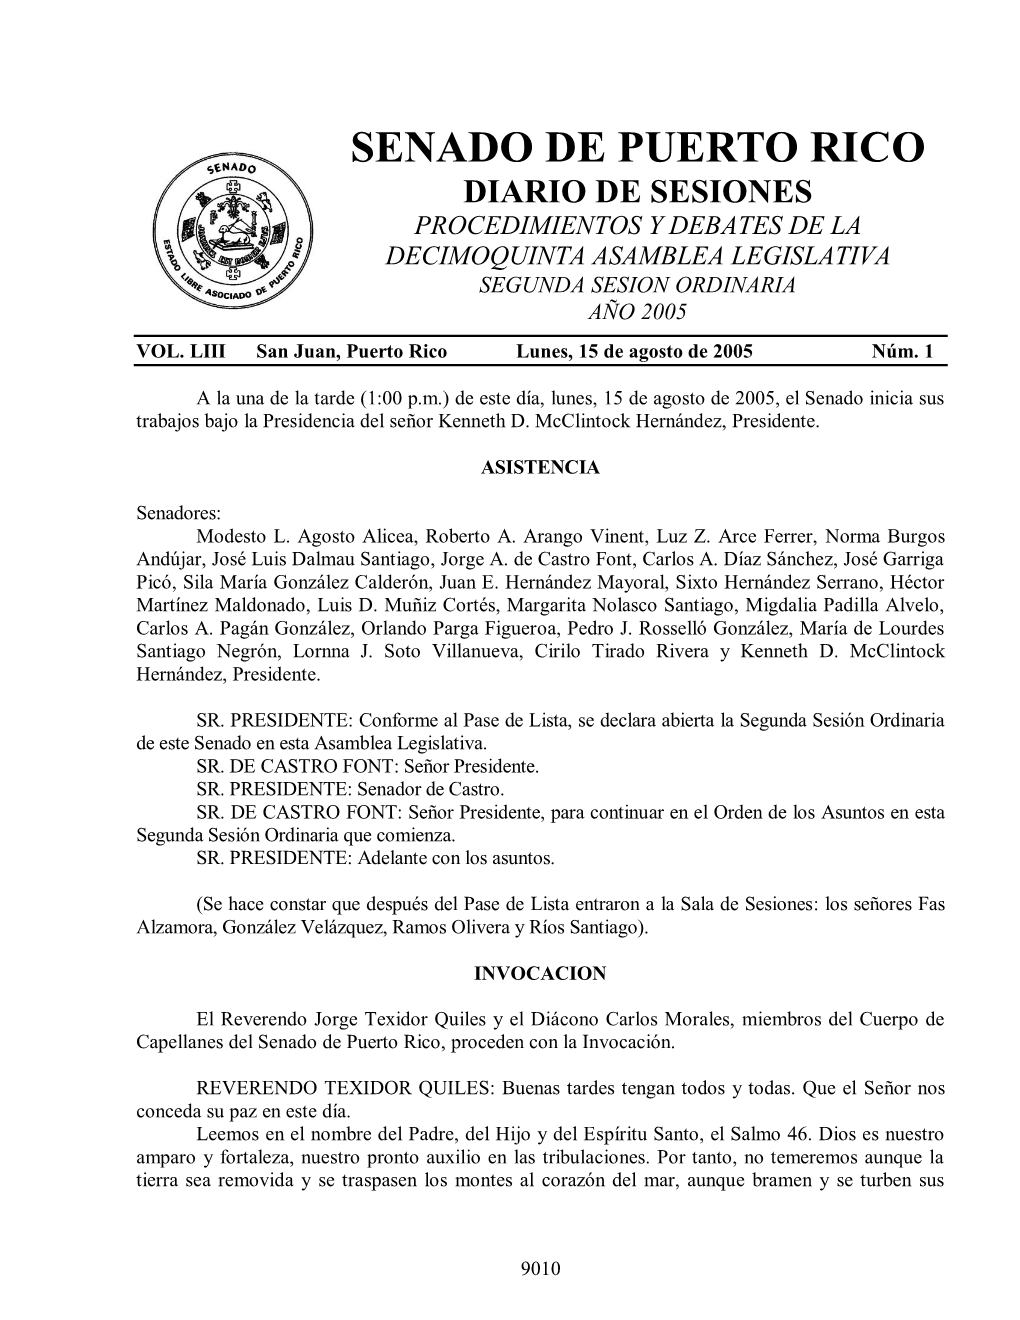 Senado De Puerto Rico Diario De Sesiones Procedimientos Y Debates De La Decimoquinta Asamblea Legislativa Segunda Sesion Ordinaria Año 2005 Vol